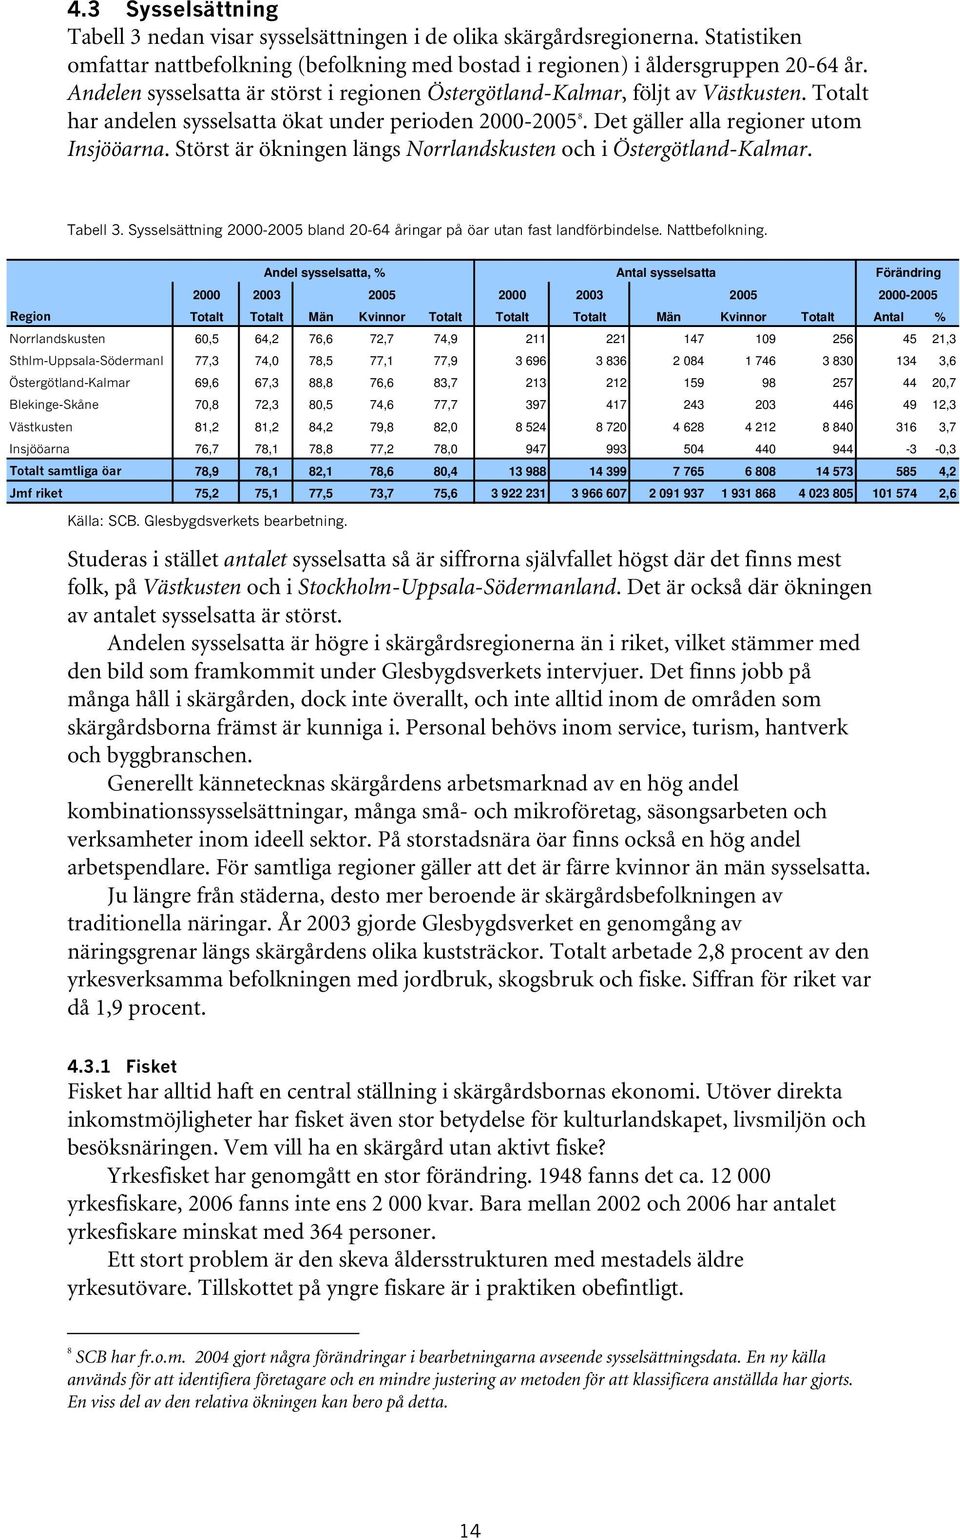 Störst är ökningen längs Norrlandskusten och i Östergötland-Kalmar. Tabell 3. Sysselsättning 2000-2005 bland 20-64 åringar på öar utan fast landförbindelse. Nattbefolkning.